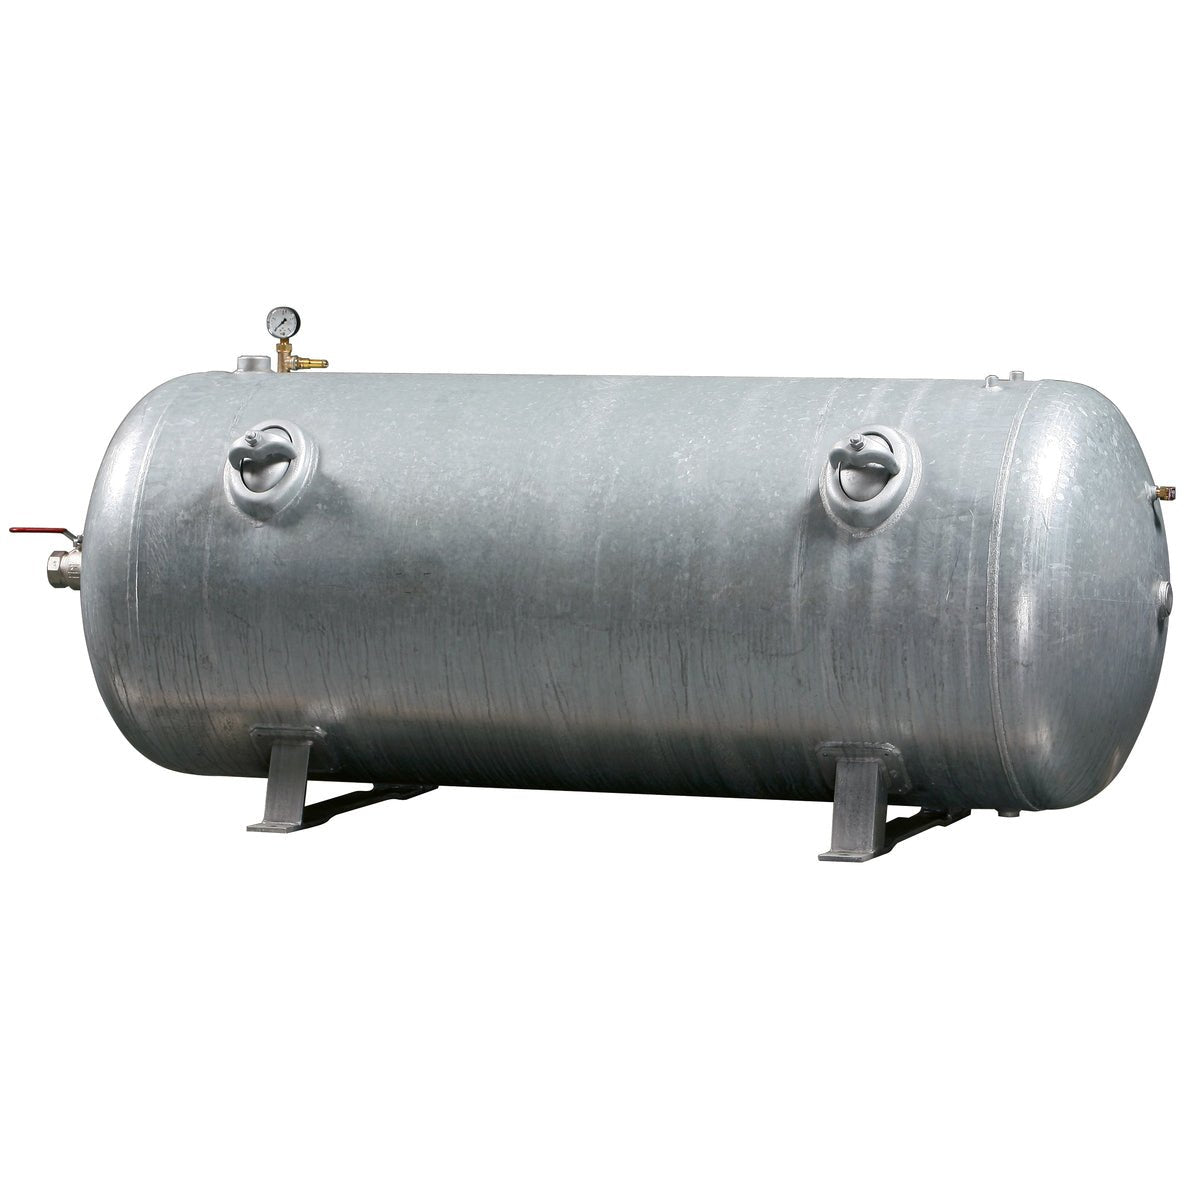 Kaeser Druckluftbehälter 250/11 lg. CE/SPV - Pillunat - 3.5087.30100 - Kärcher Home & Garden - Kärcher Professional - Kaser Kompressoren